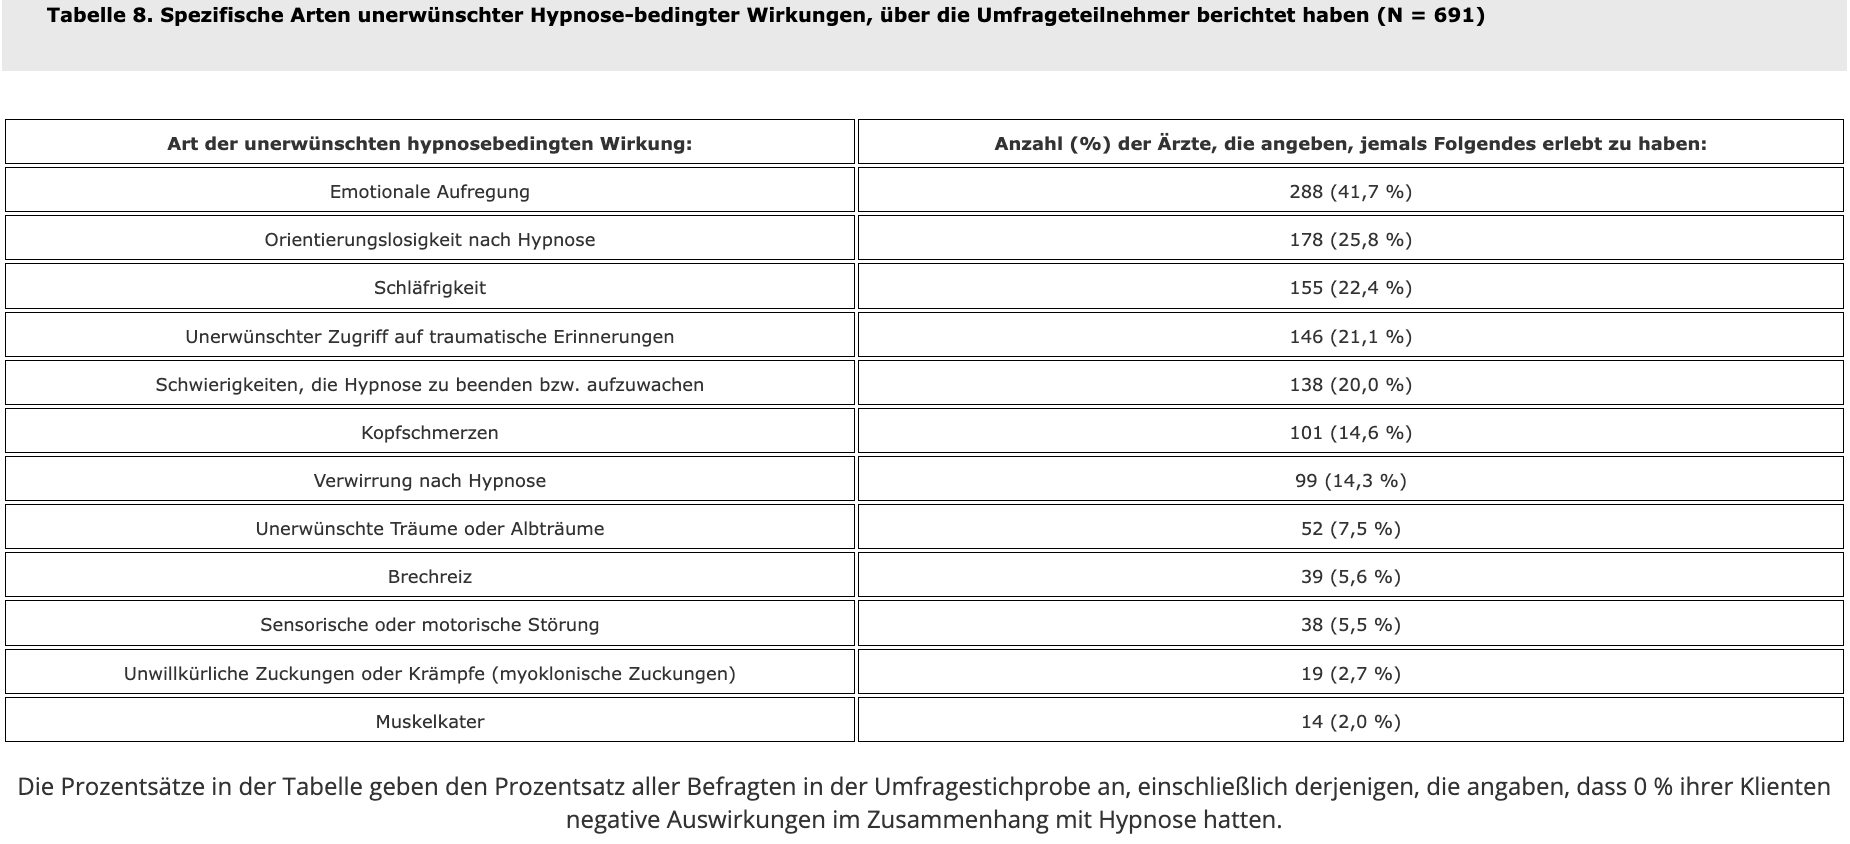 Tabelle 8. Spezifische Arten unerwünschter Hypnose-bedingter Wirkungen, über die Umfrageteilnehmer berichtet haben (N = 691)